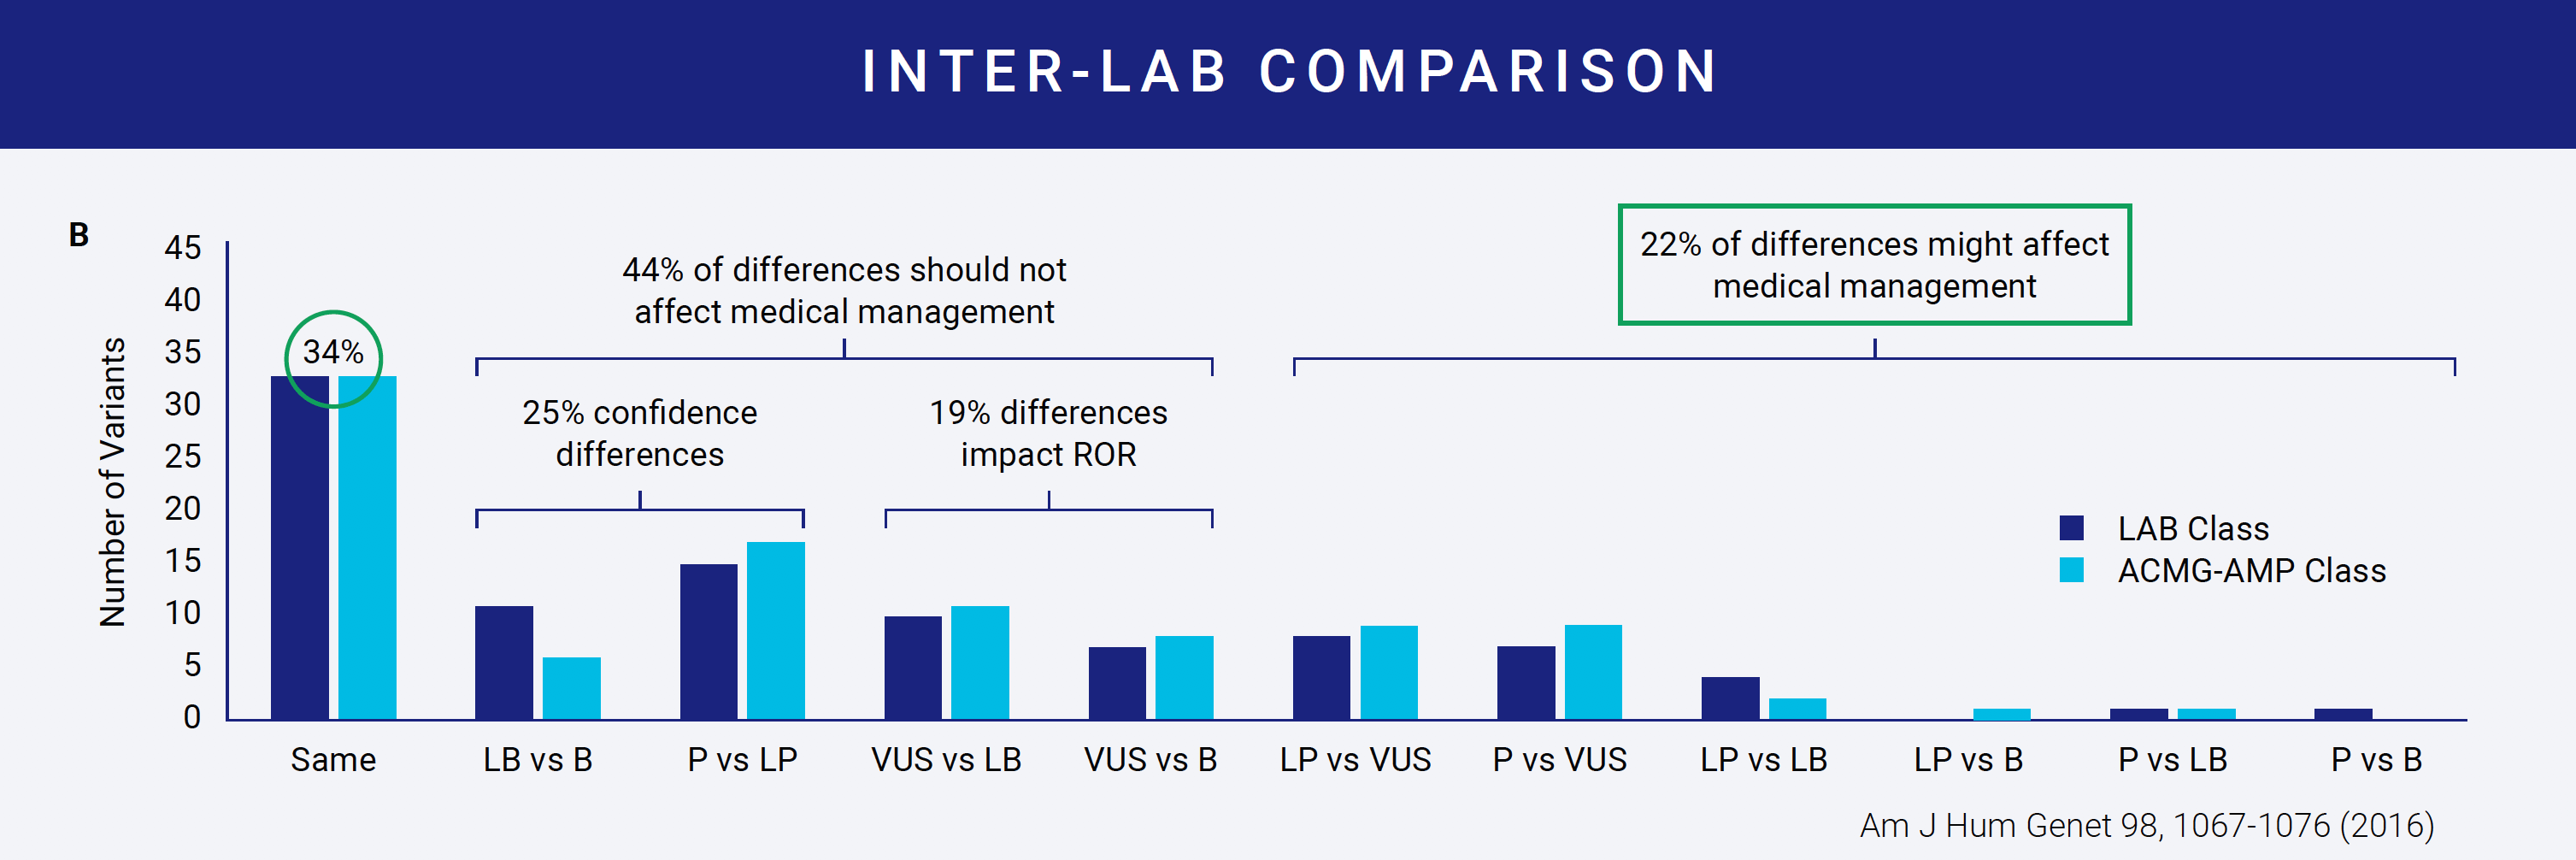 Inter-lab comparison